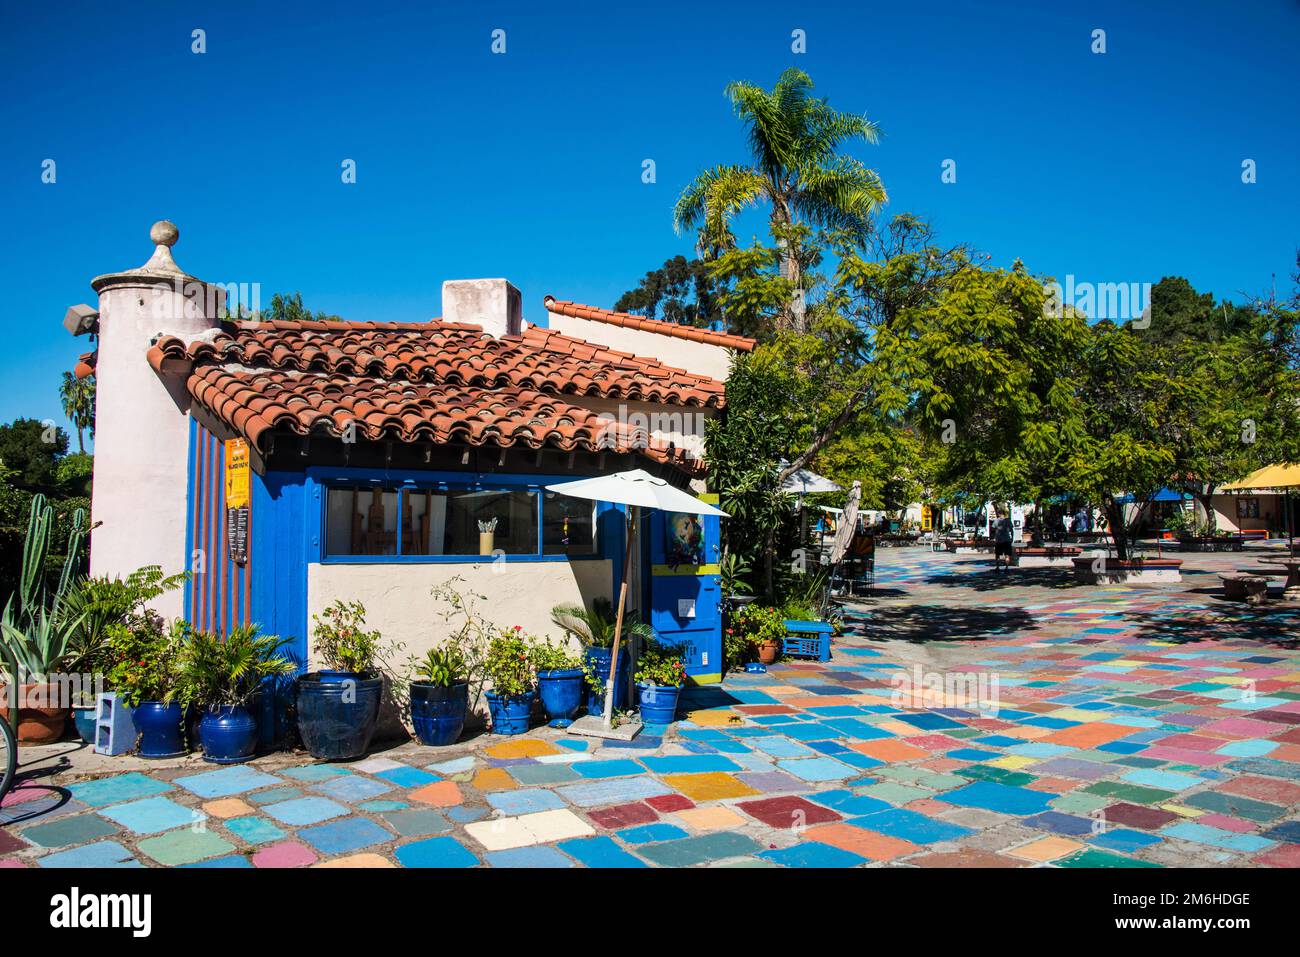 Architettura spagnola, Balboa Park, San Diego, California, USA Foto Stock